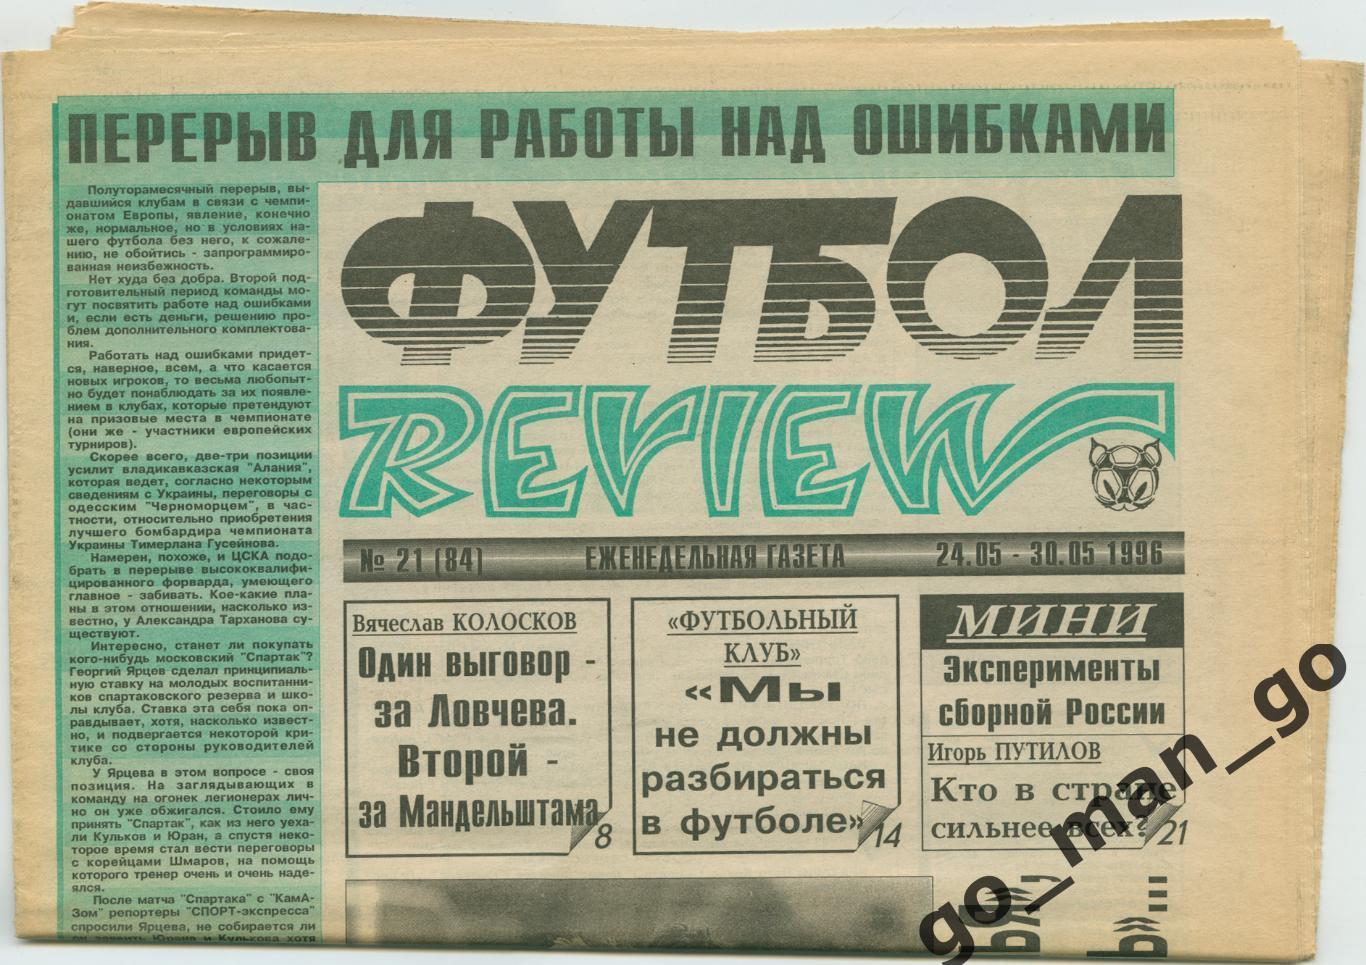 Еженедельник Футбол-Review (Футбол-Ревю), 24-30.05.1996, № 21.